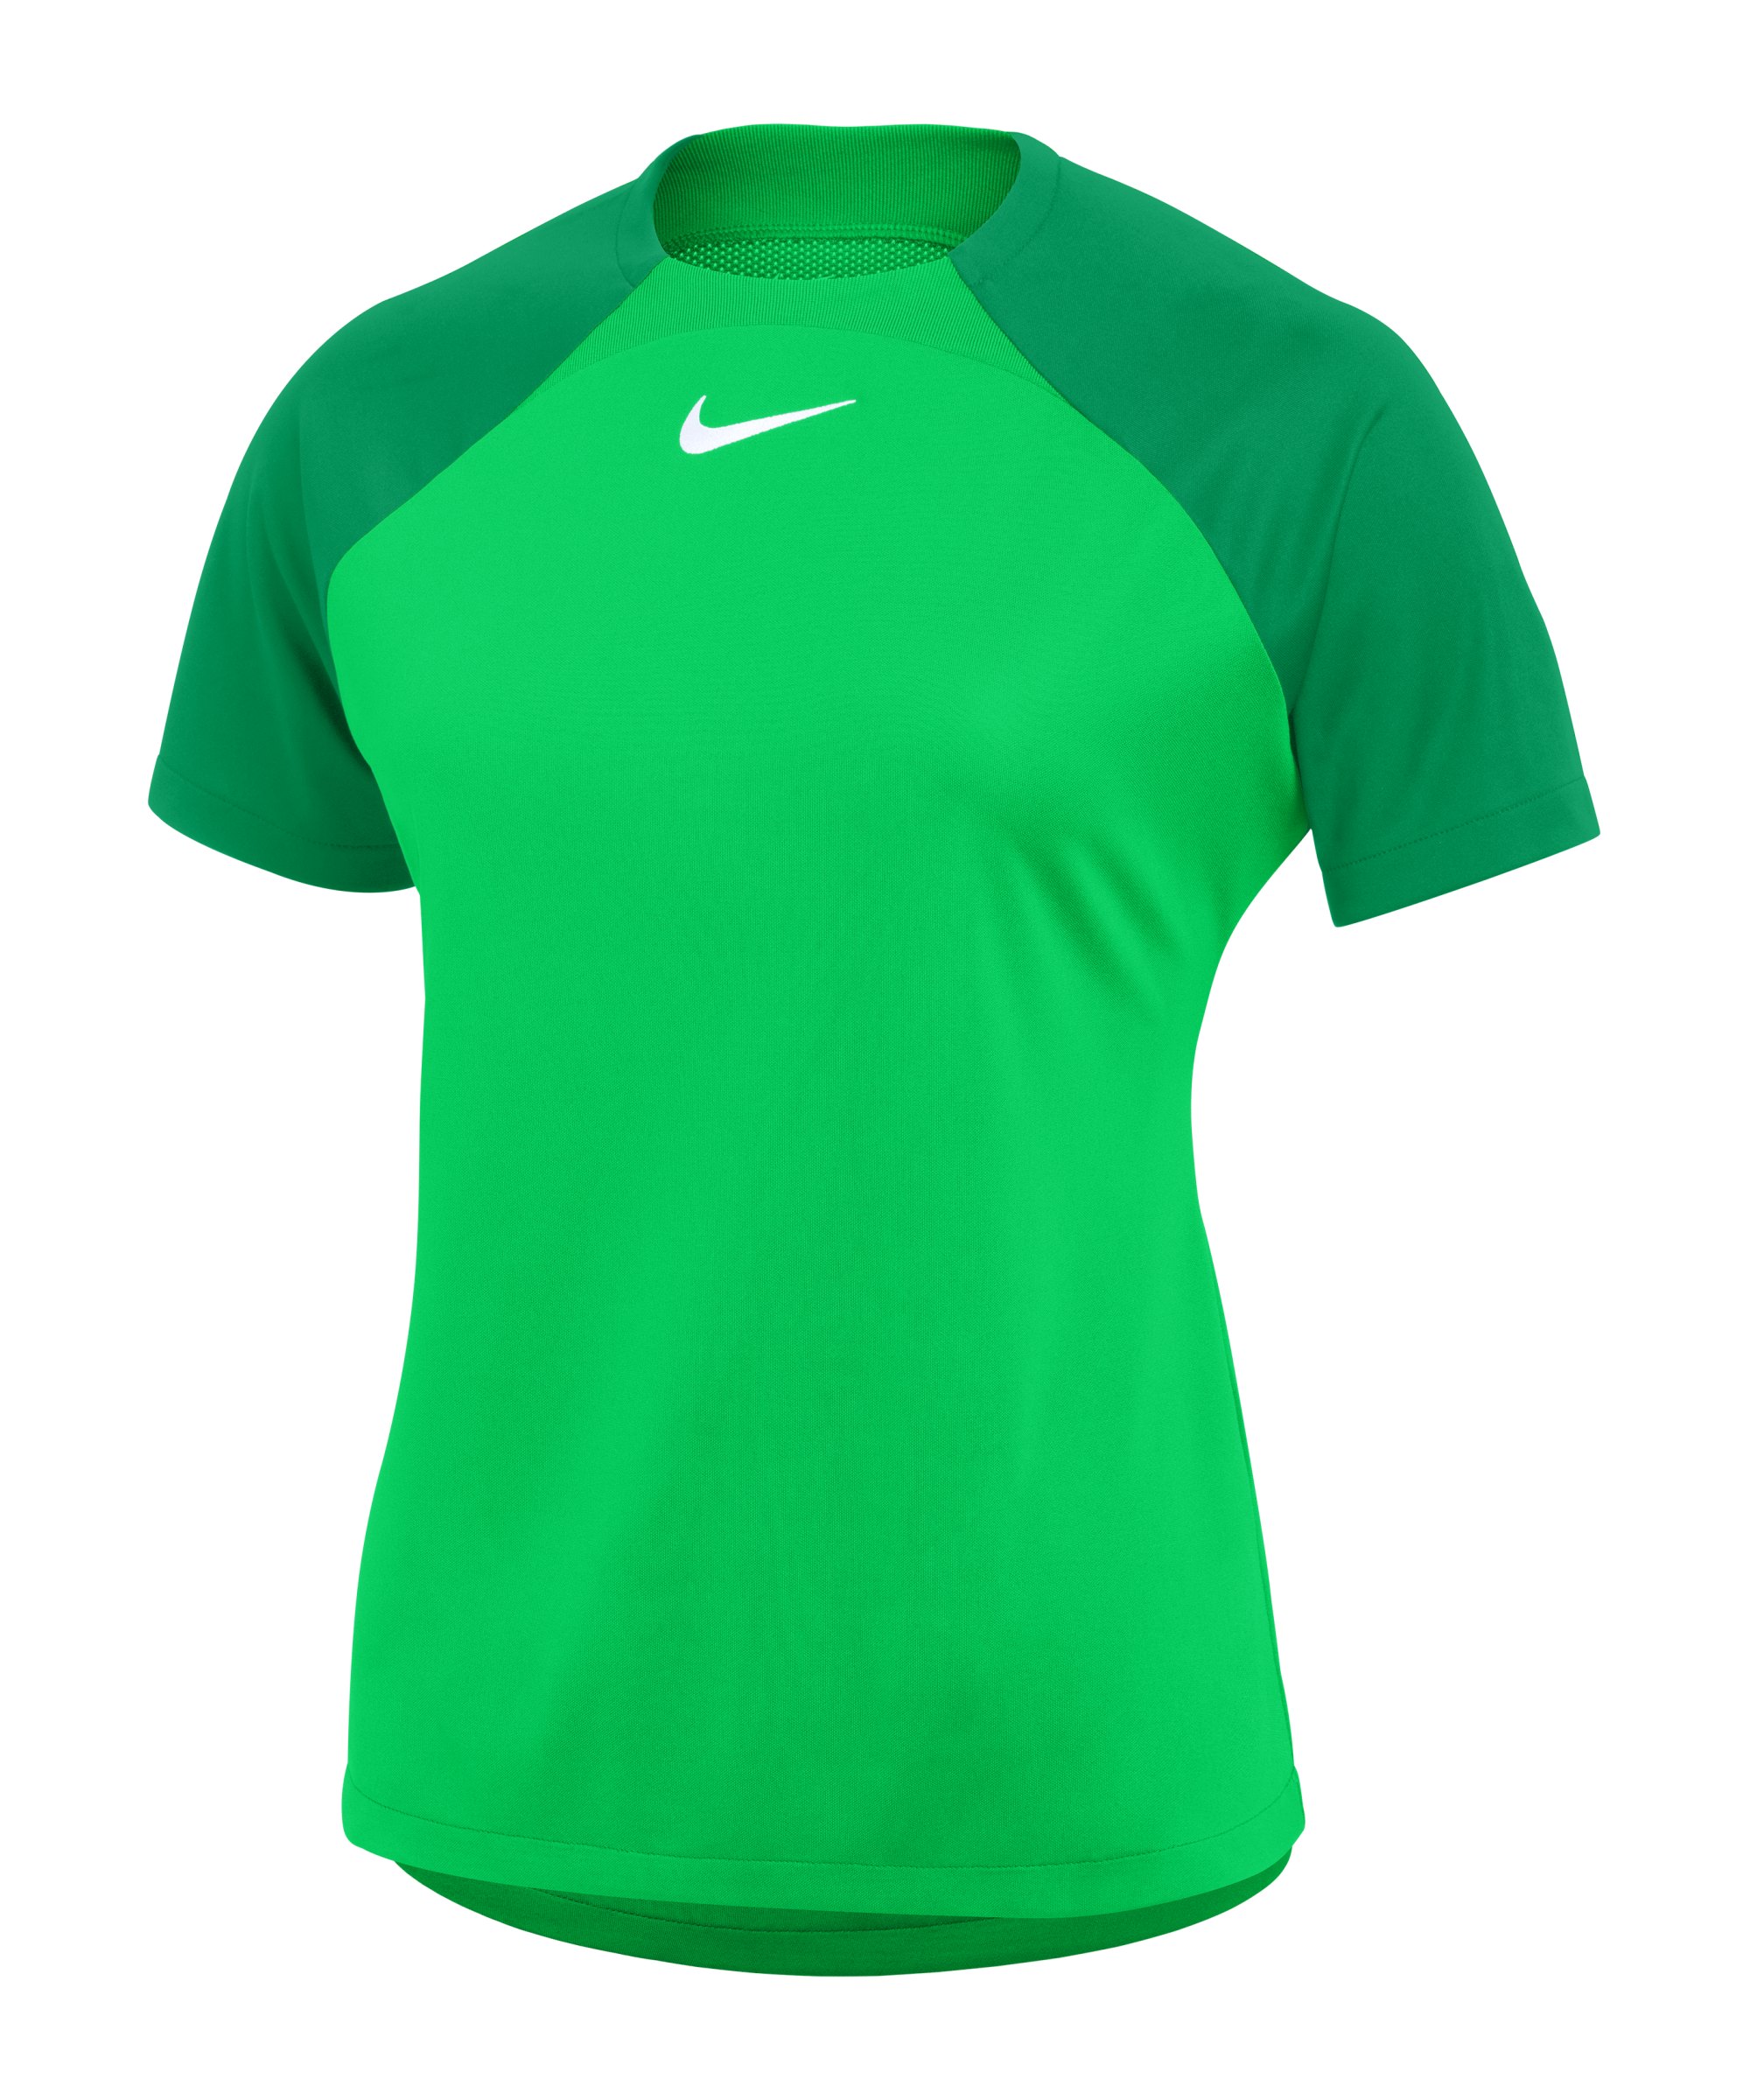 Nike Academy Pro Trainingsshirt Damen Grün Weiss F329 - gruen